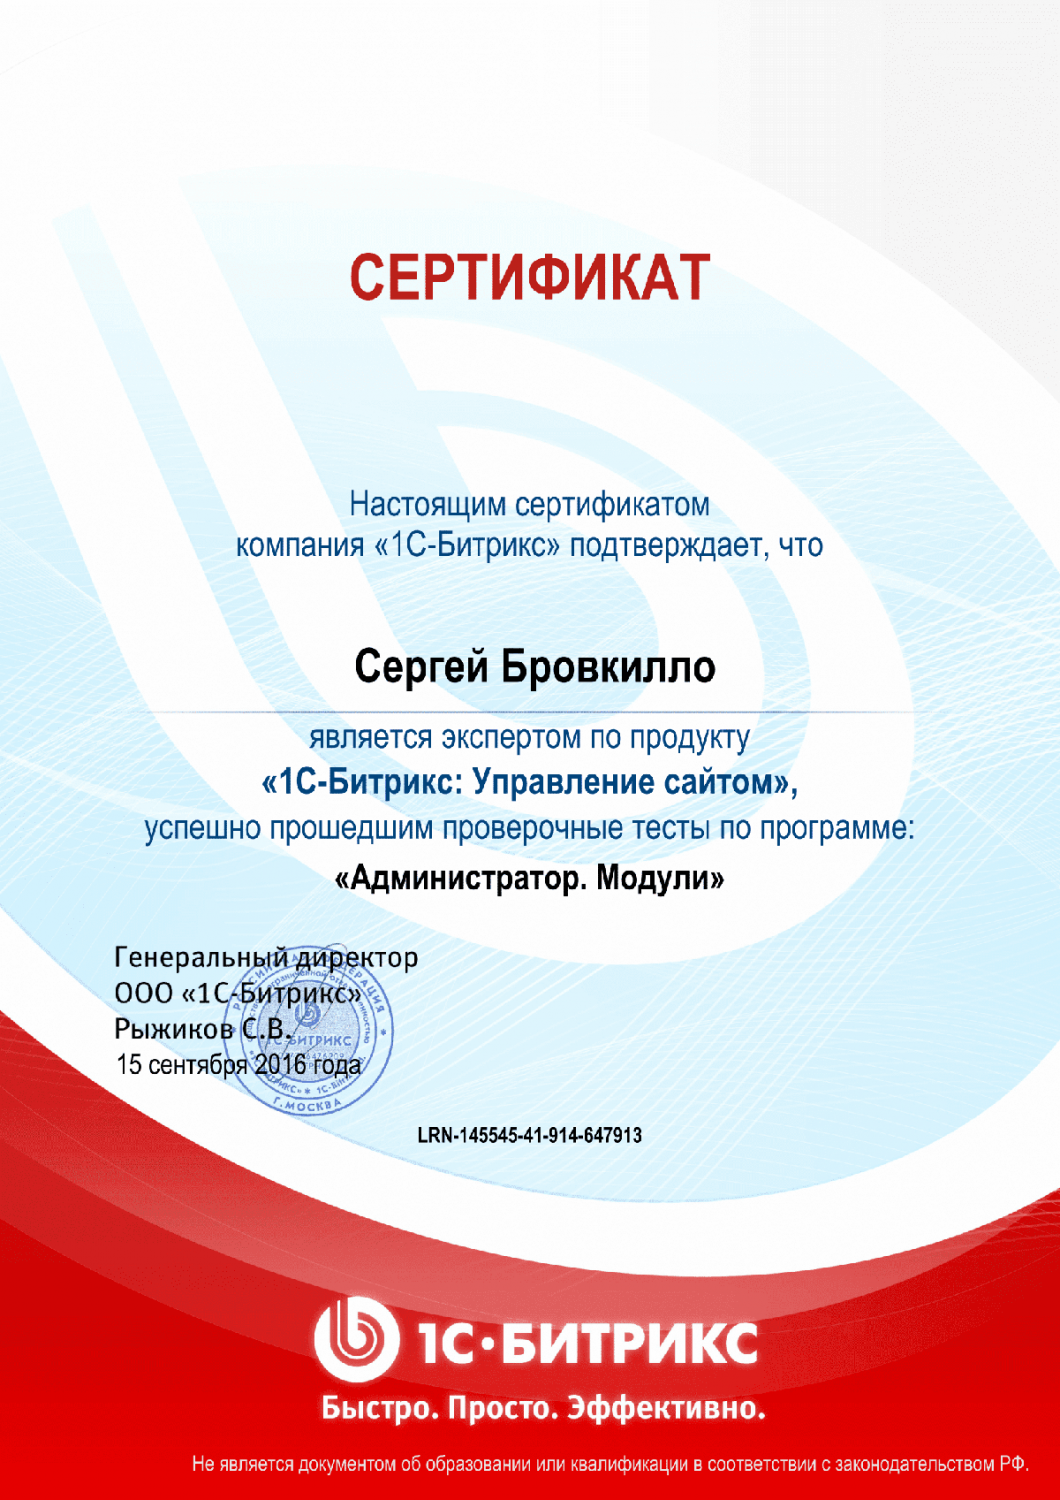 Сертификат эксперта по программе "Администратор. Модули" в Нижнего Тагила